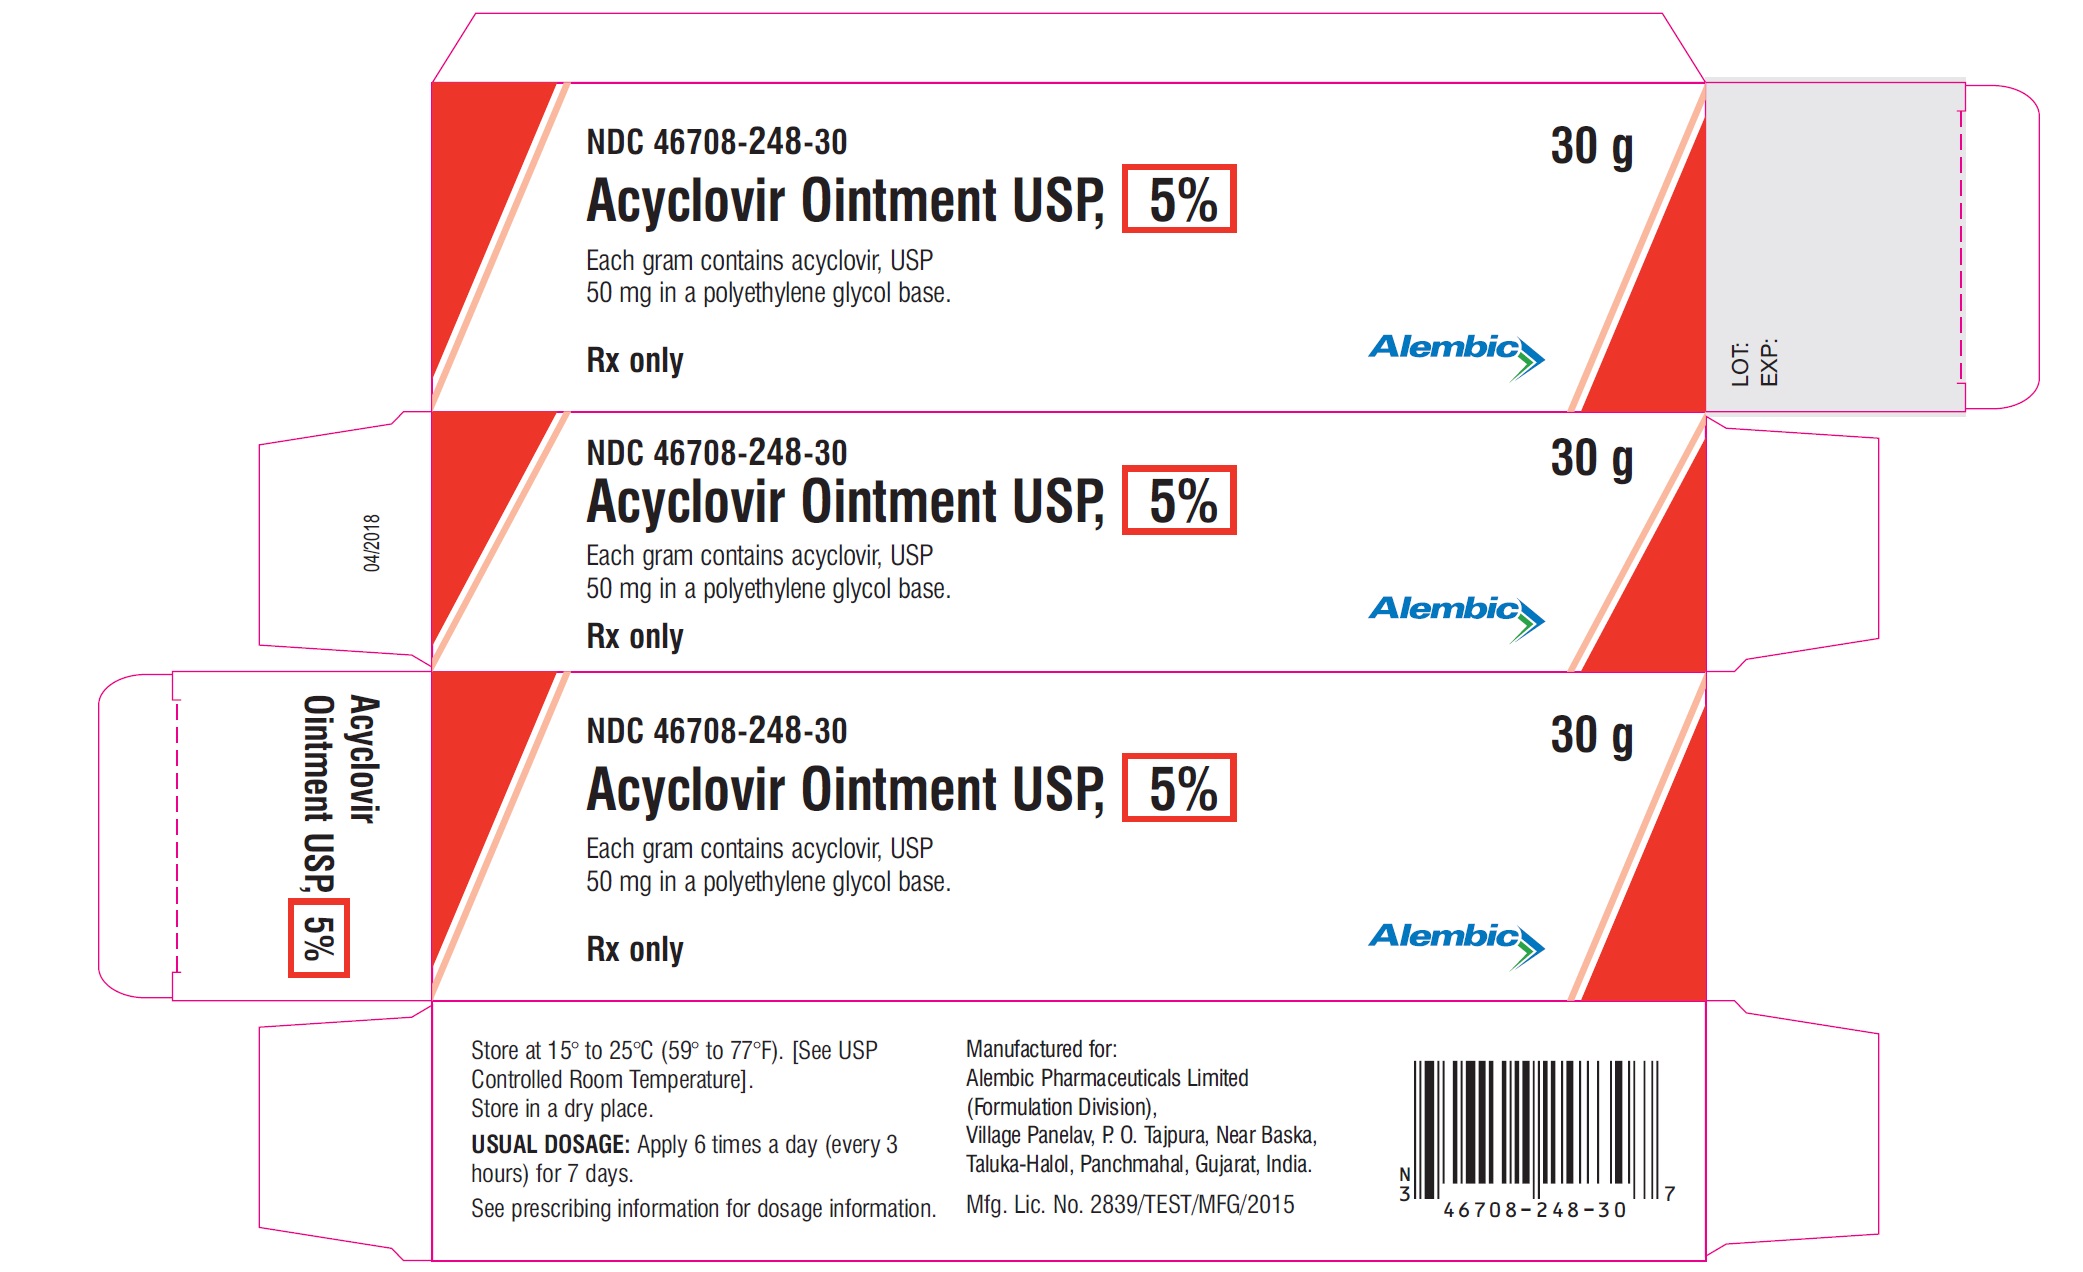 Acyclovir Ointment USP